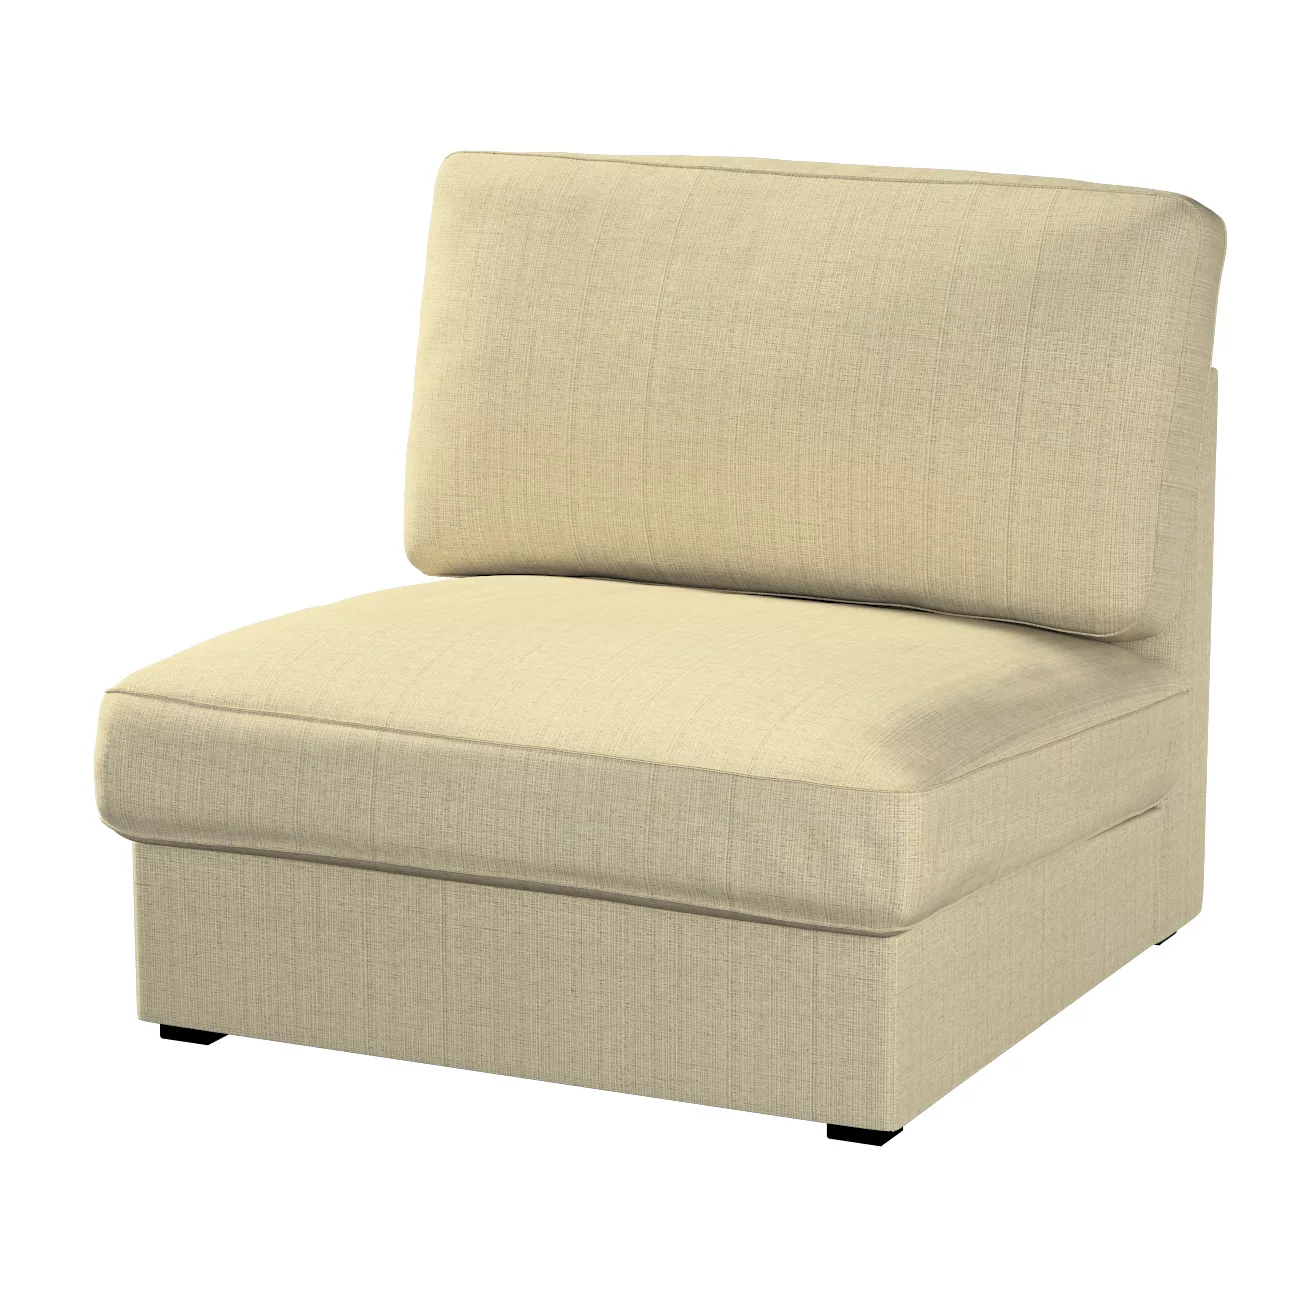 Bezug für Kivik Sessel nicht ausklappbar, beige-creme, Bezug für Sessel Kiv günstig online kaufen